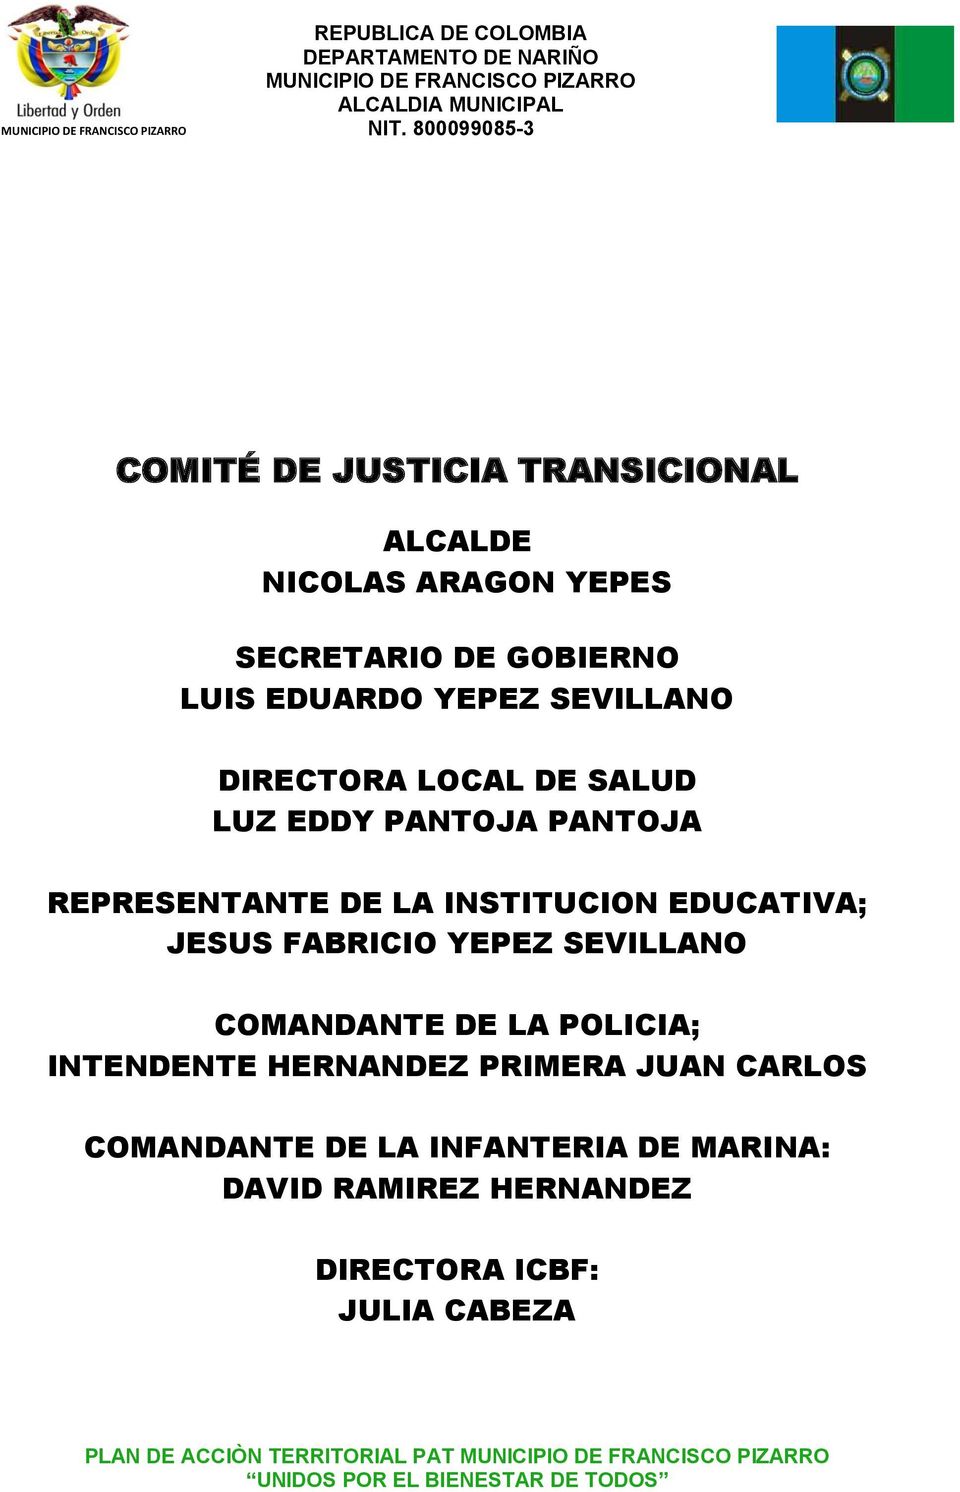 EDUCATIVA; JESUS FABRICIO YEPEZ SEVILLANO COMANDANTE DE LA POLICIA; INTENDENTE HERNANDEZ PRIMERA JUAN CARLOS